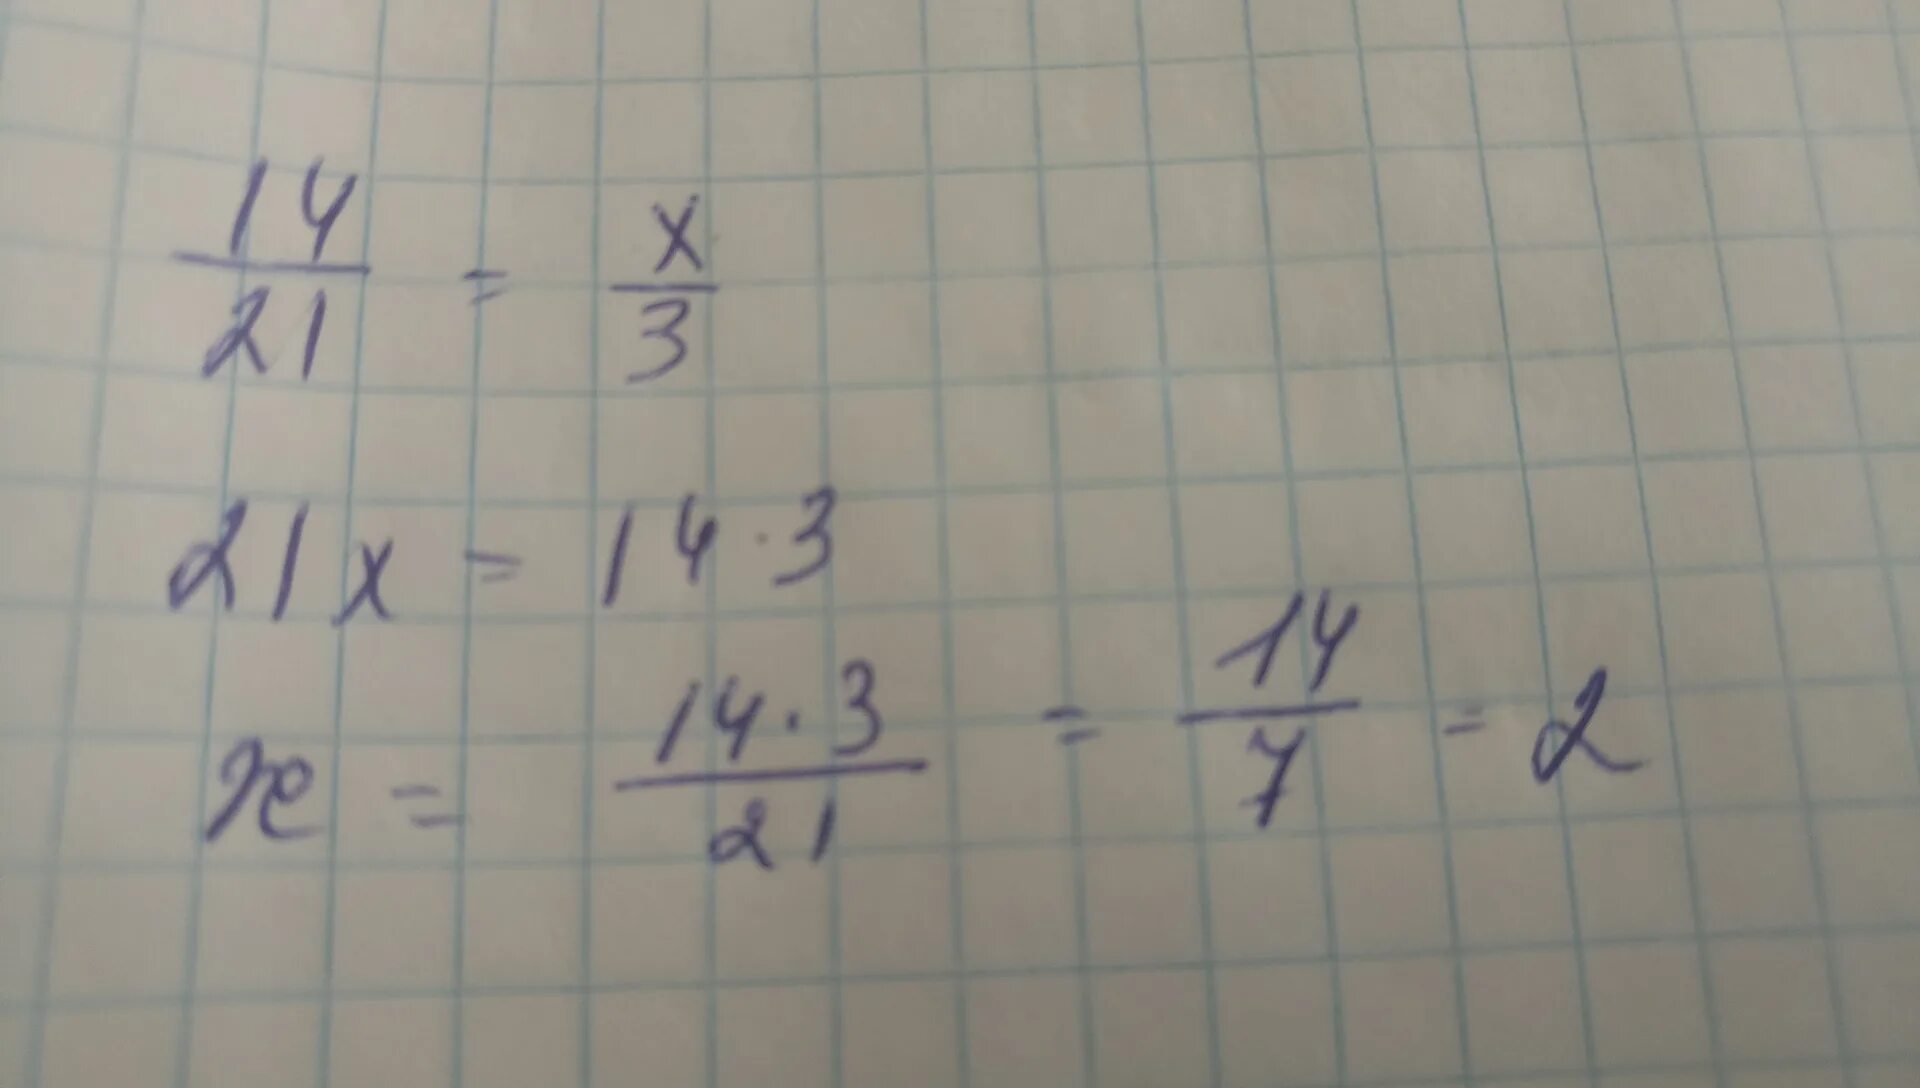 Икс икс 9 равно 10 3. При каком значении x верно равенство 14/21 x/3. При каком значении а верно равенство а+а а-а. При каком значении Икс верно равенство. 14/21=X/3.